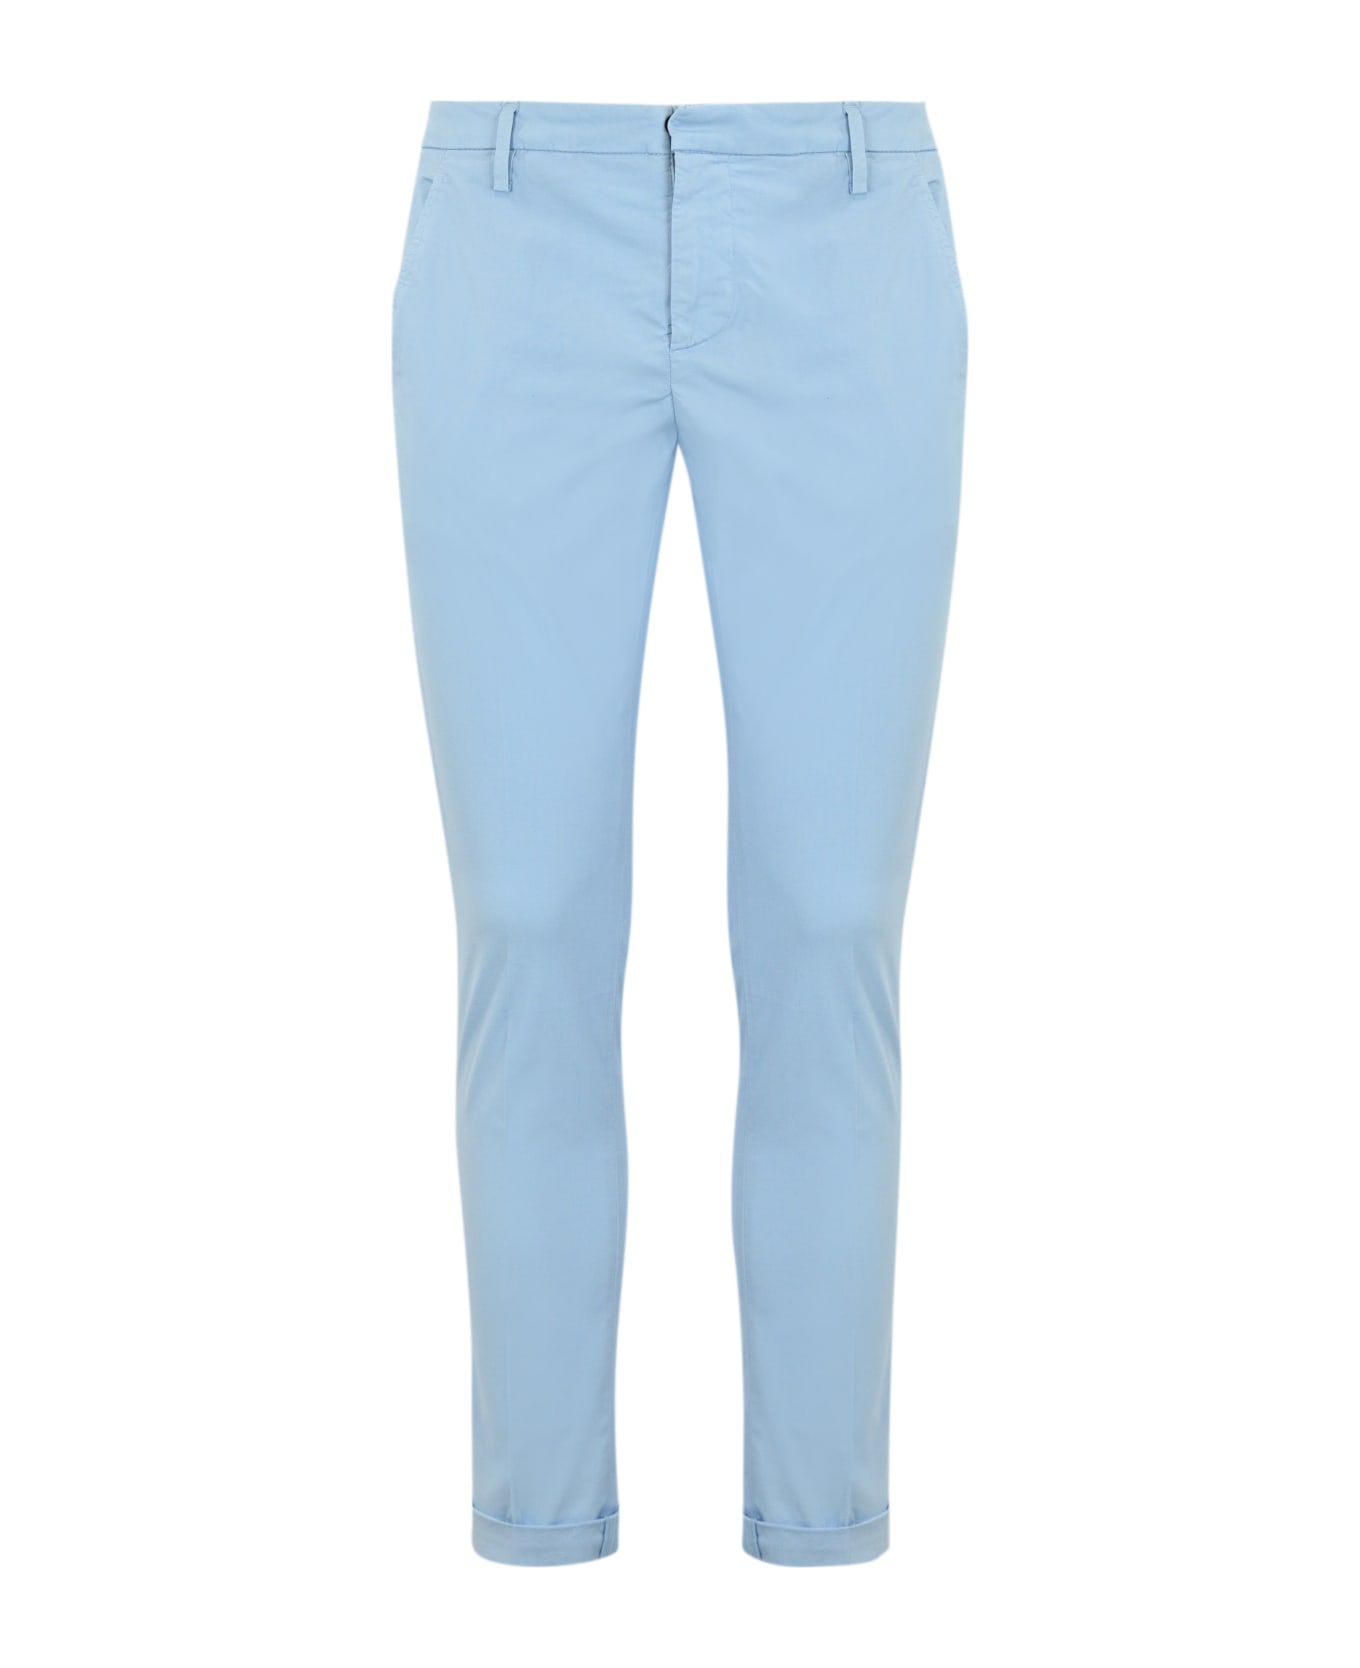 Dondup Gaubert Trousers In Light Blue Poplin - Azzurro ボトムス